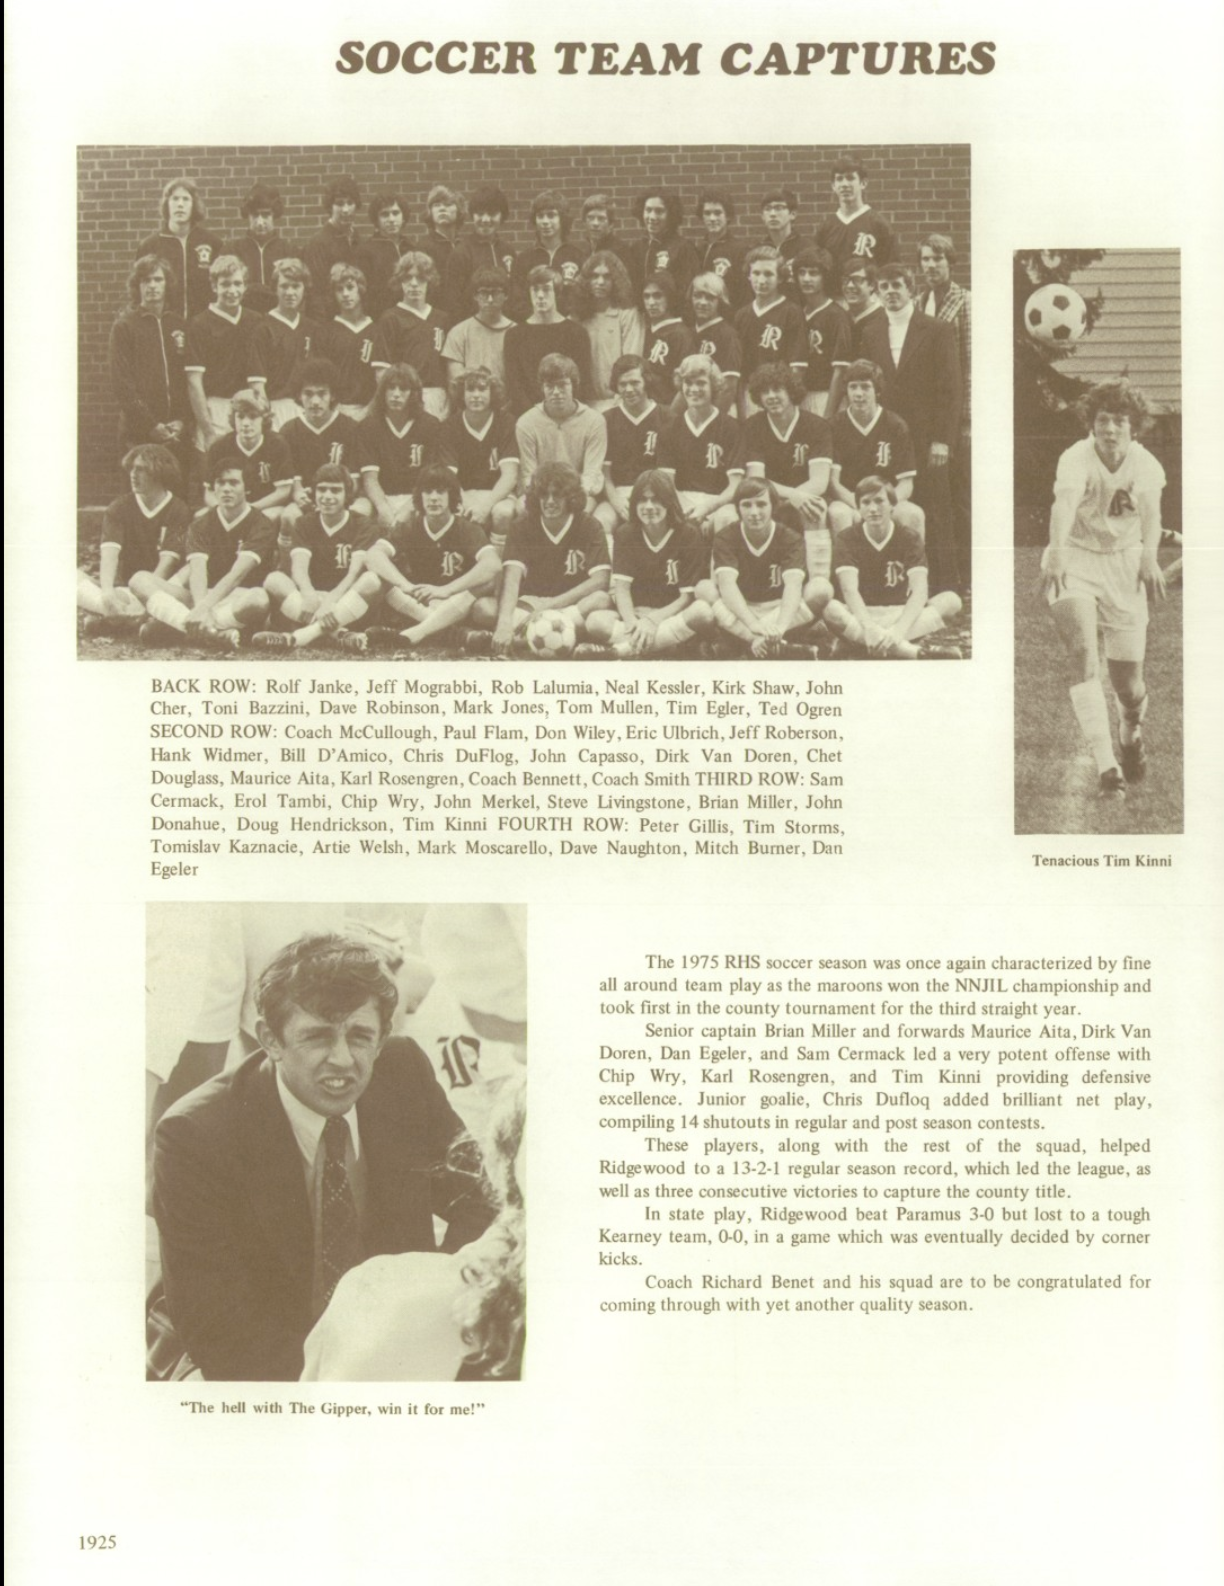 1975 Boys’ Soccer Team